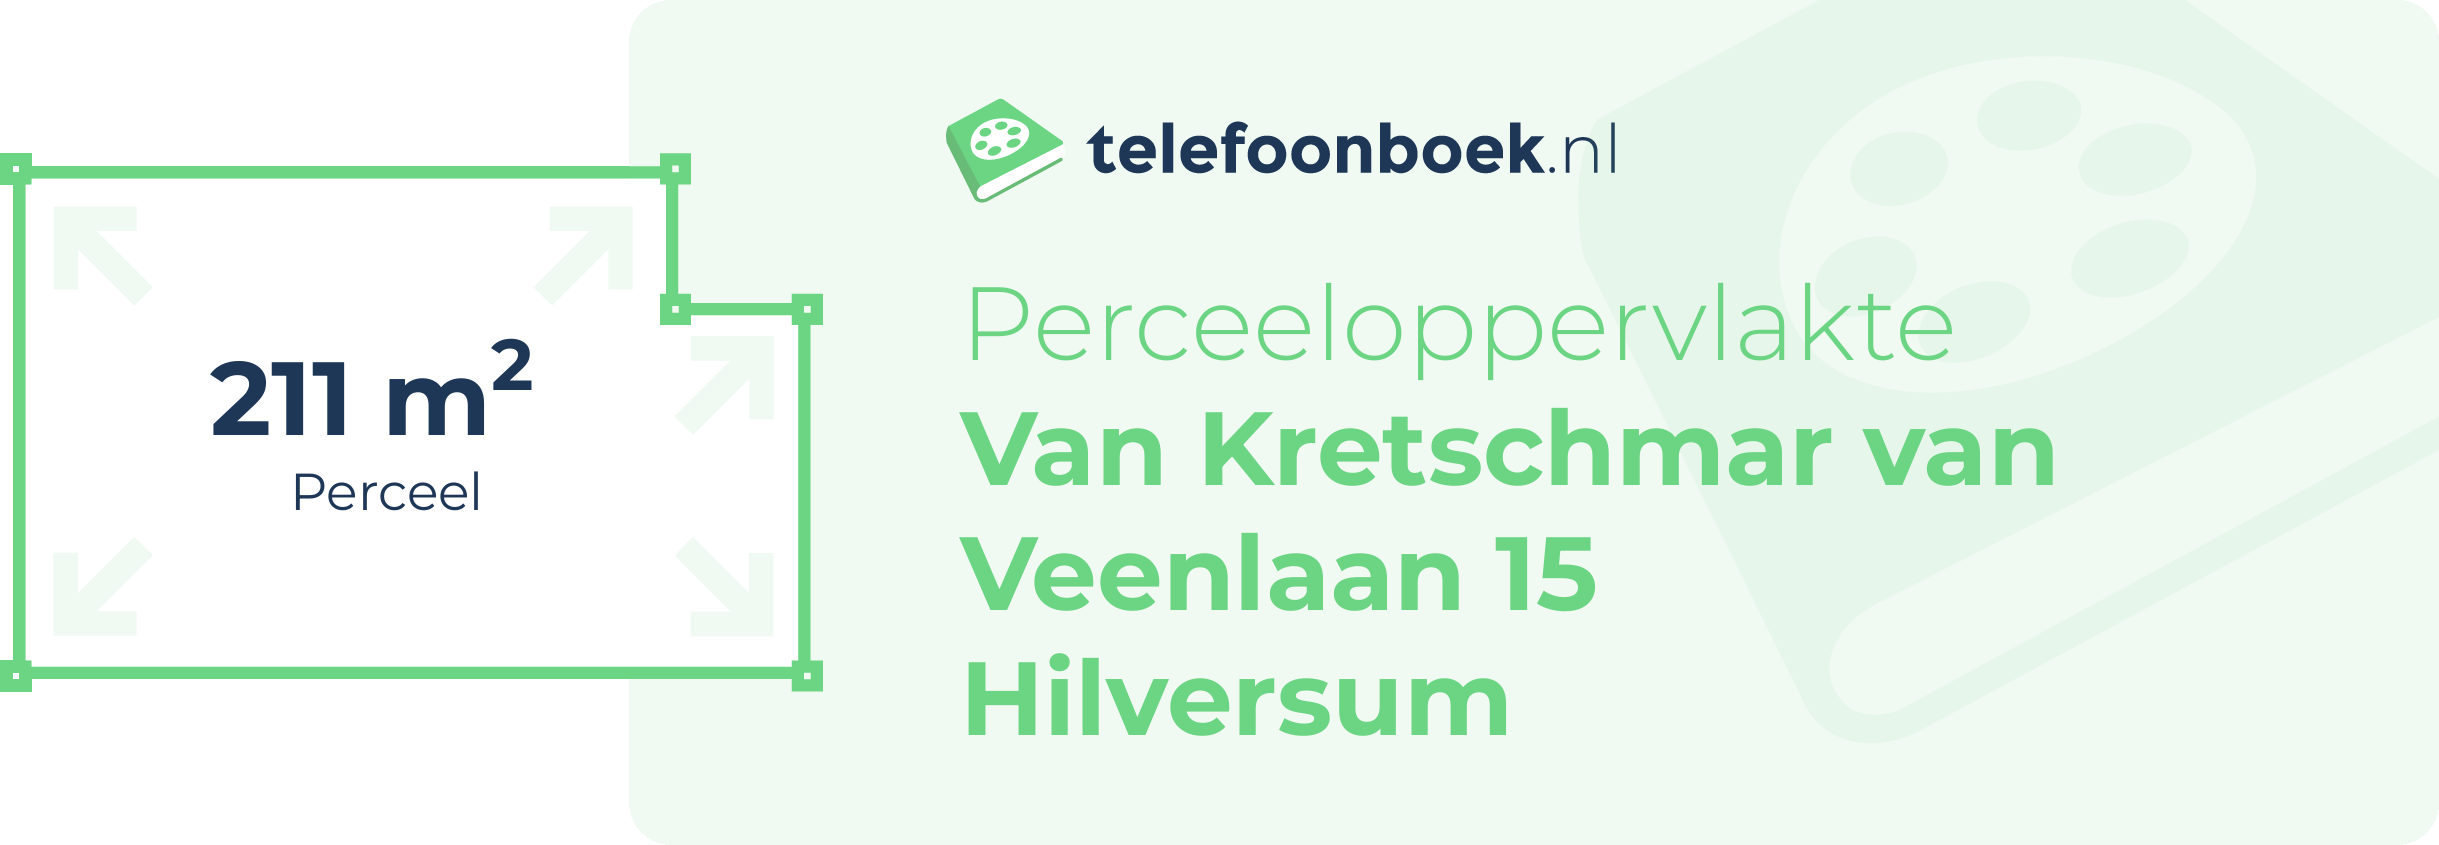 Perceeloppervlakte Van Kretschmar Van Veenlaan 15 Hilversum